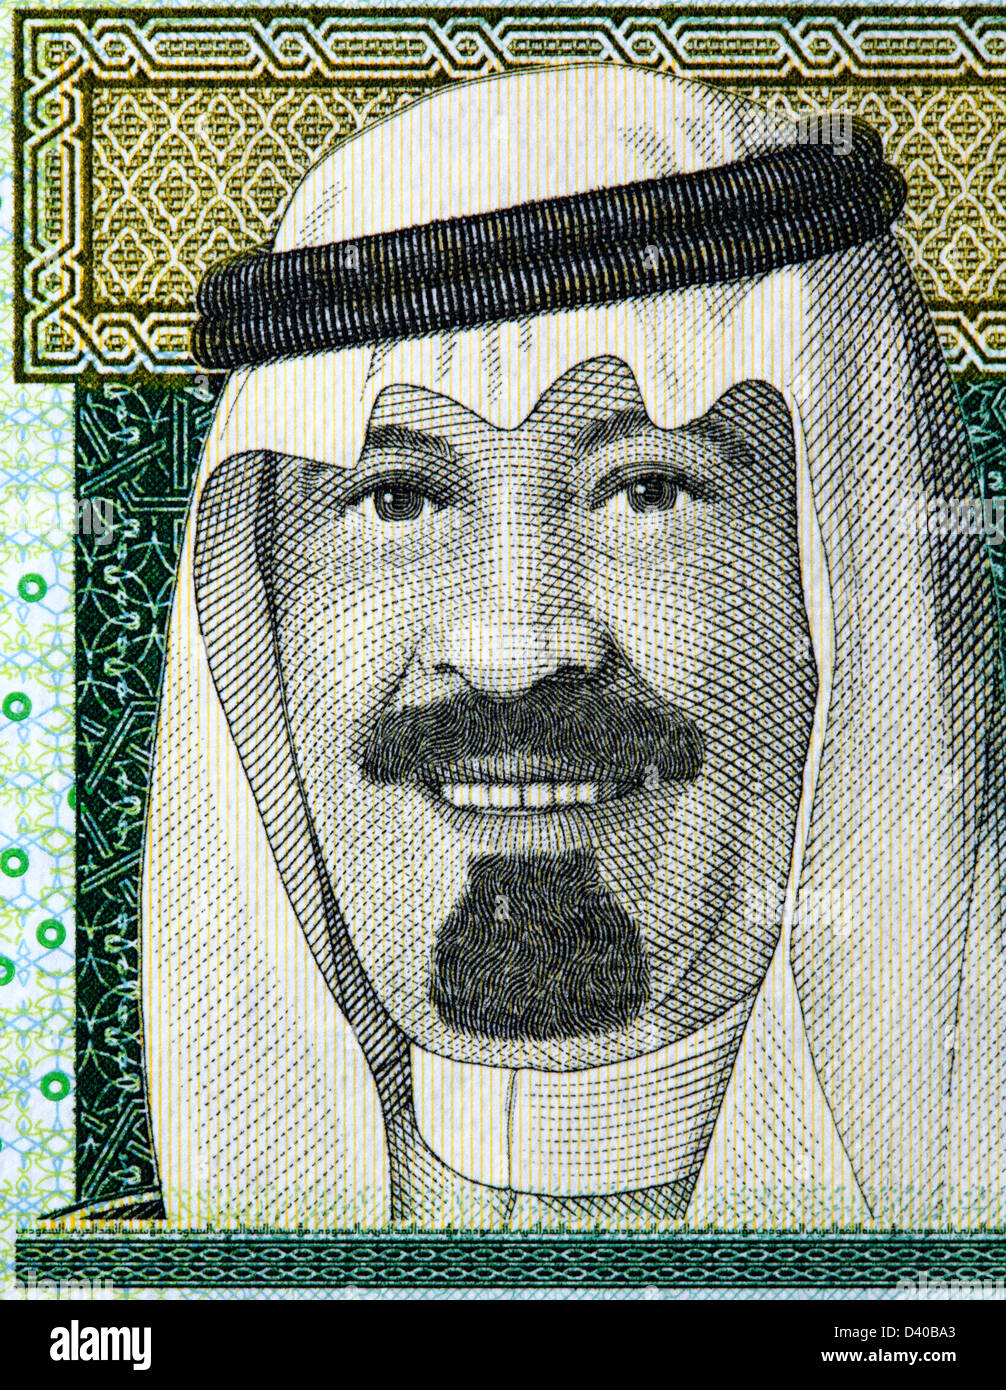 Porträt von König Abdullah von 1 Rial Banknote, Saudi Arabien, 2007 Stockfoto